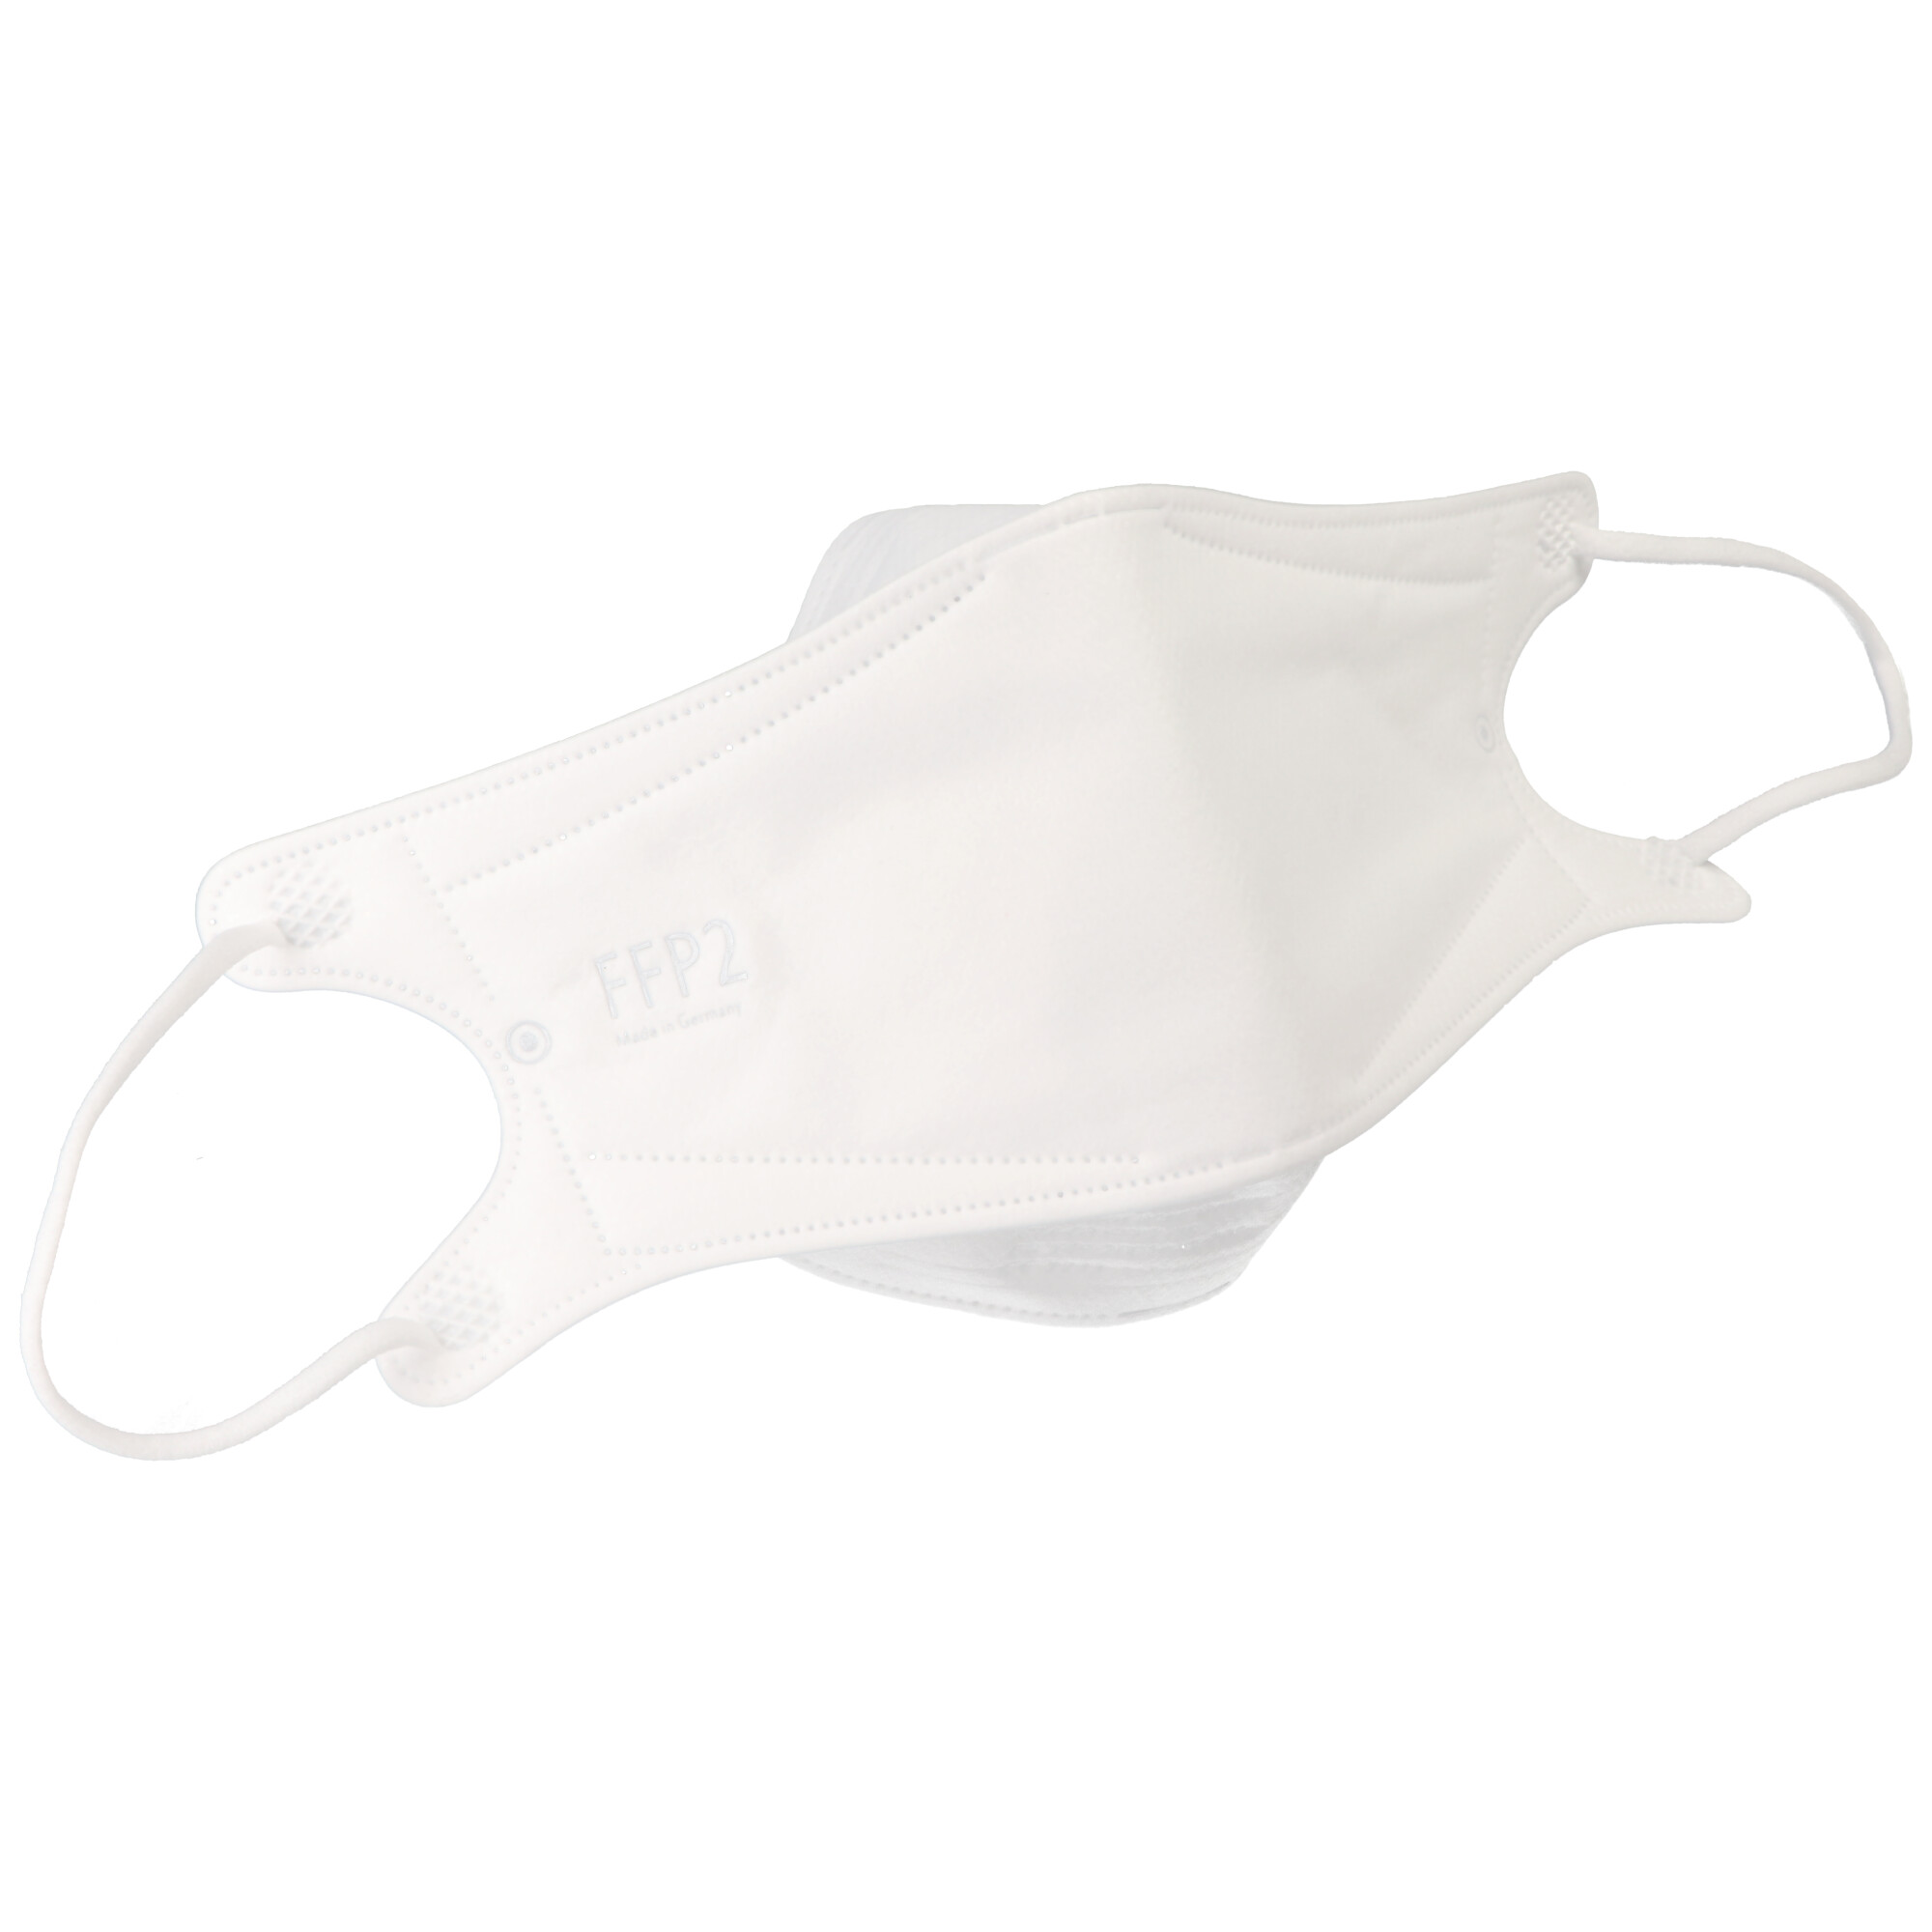 ​10 Stück FFP2 Maske Weiß, zertifiziert nach DIN EN149:2001+A1:2009, partikelfiltrierende Halbmaske, FFP2 Schutzmaske